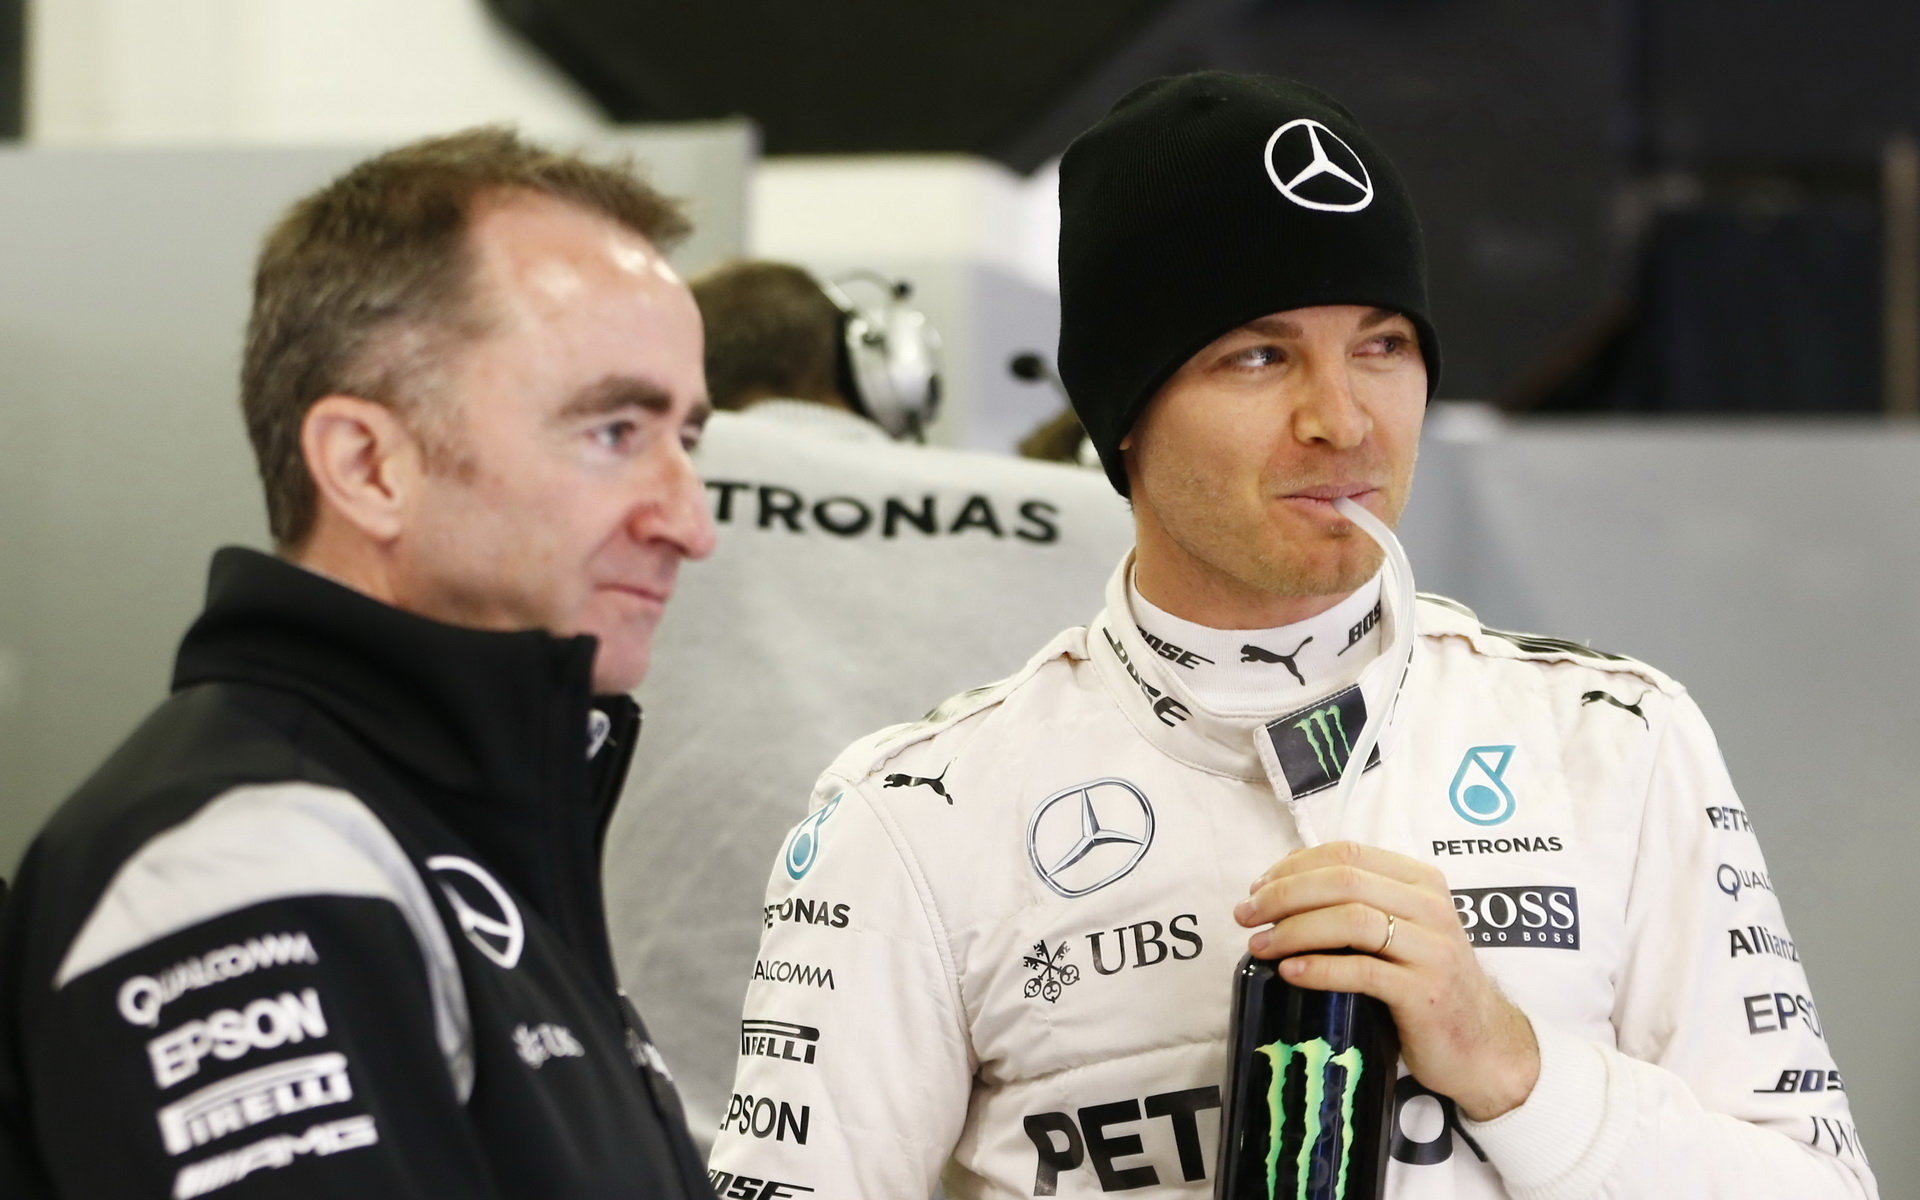 Lowe je paradoxně spokojen, že Rosberg v posledním závodě dojel až čtvrtý